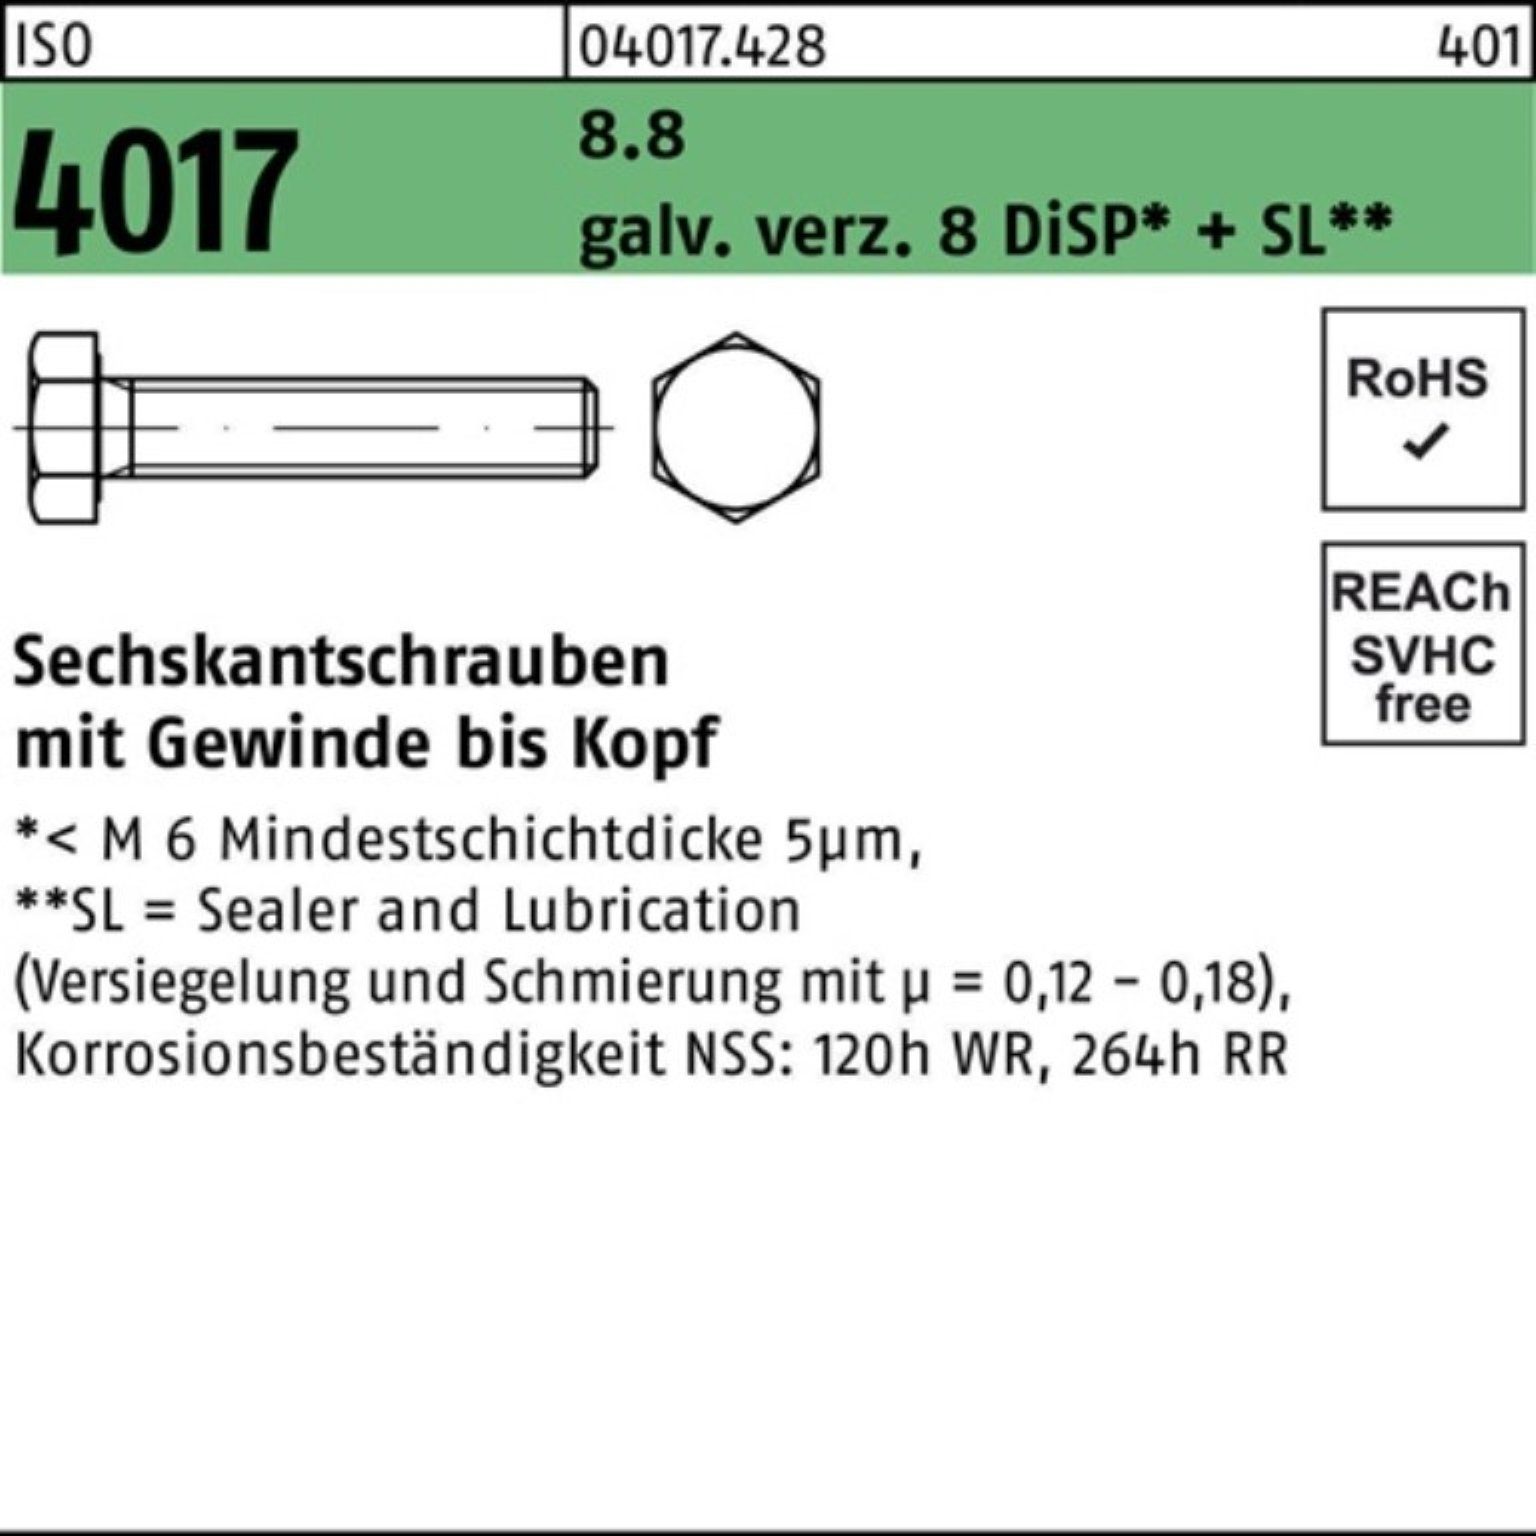 Bufab Sechskantschraube 100er Pack 8.8 VG ISO galv.verz. 4017 8 M16x 25 DiSP Sechskantschraube